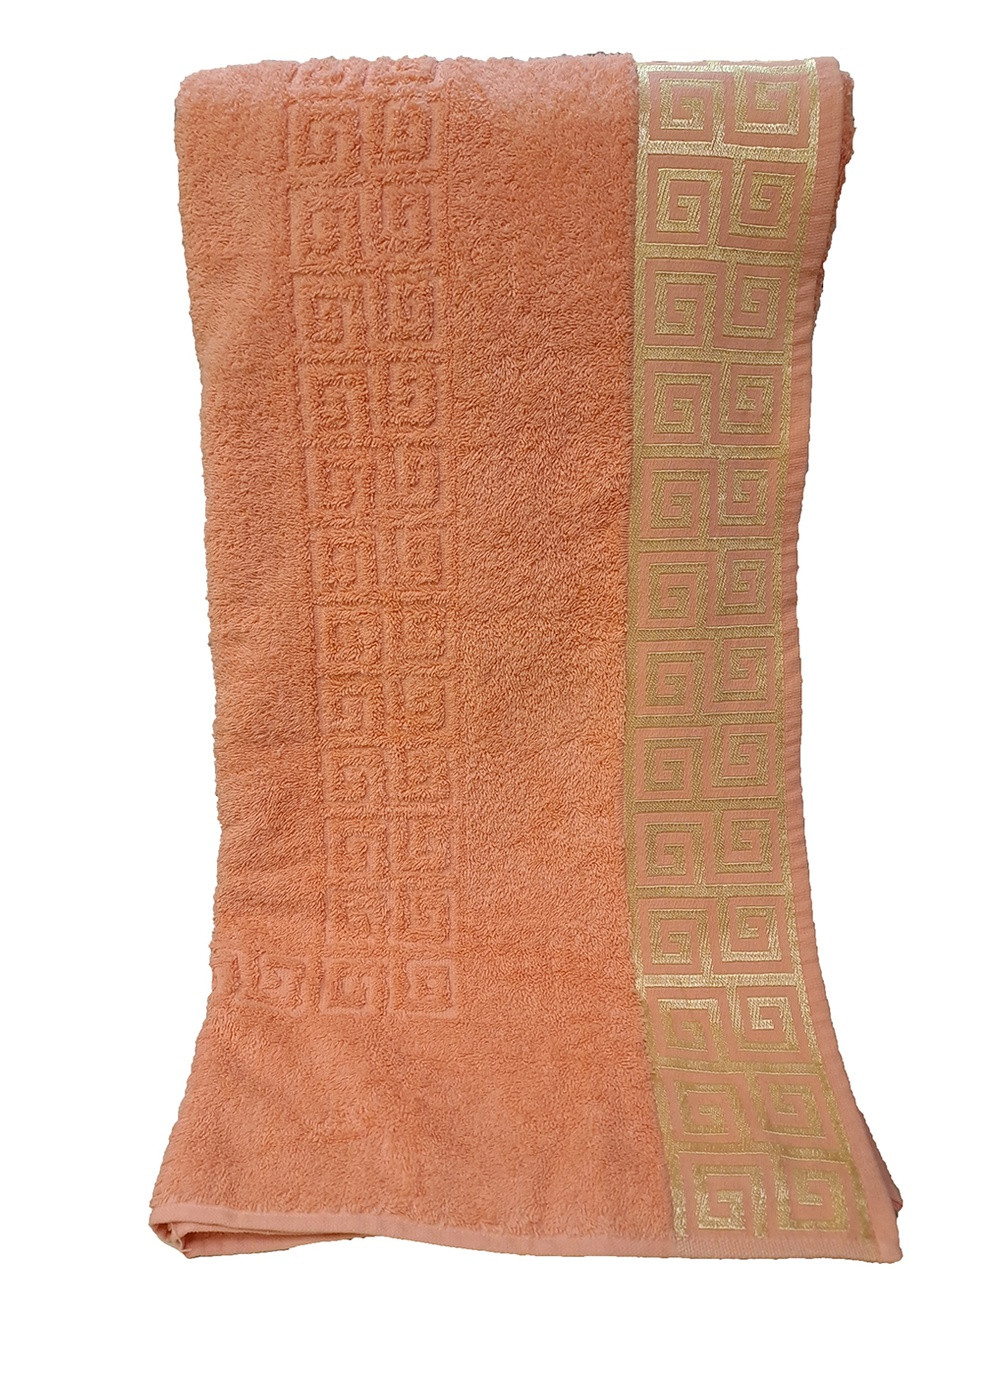 Zeron полотенце для сауны 100х150см однотонный оранжевый производство - Турция